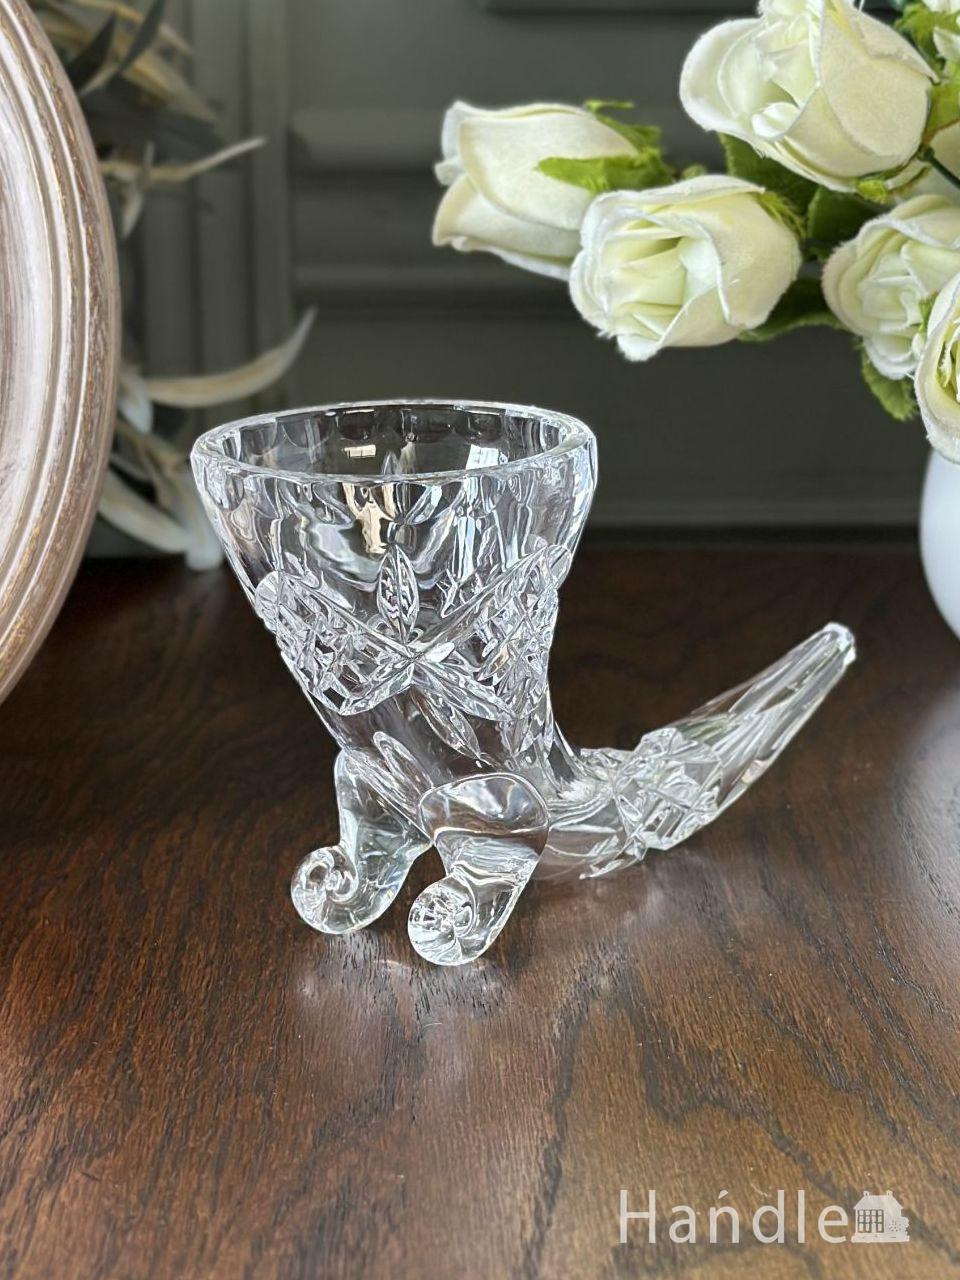 イギリスから届いたアンティークガラスの花瓶、ホーンの形をした 